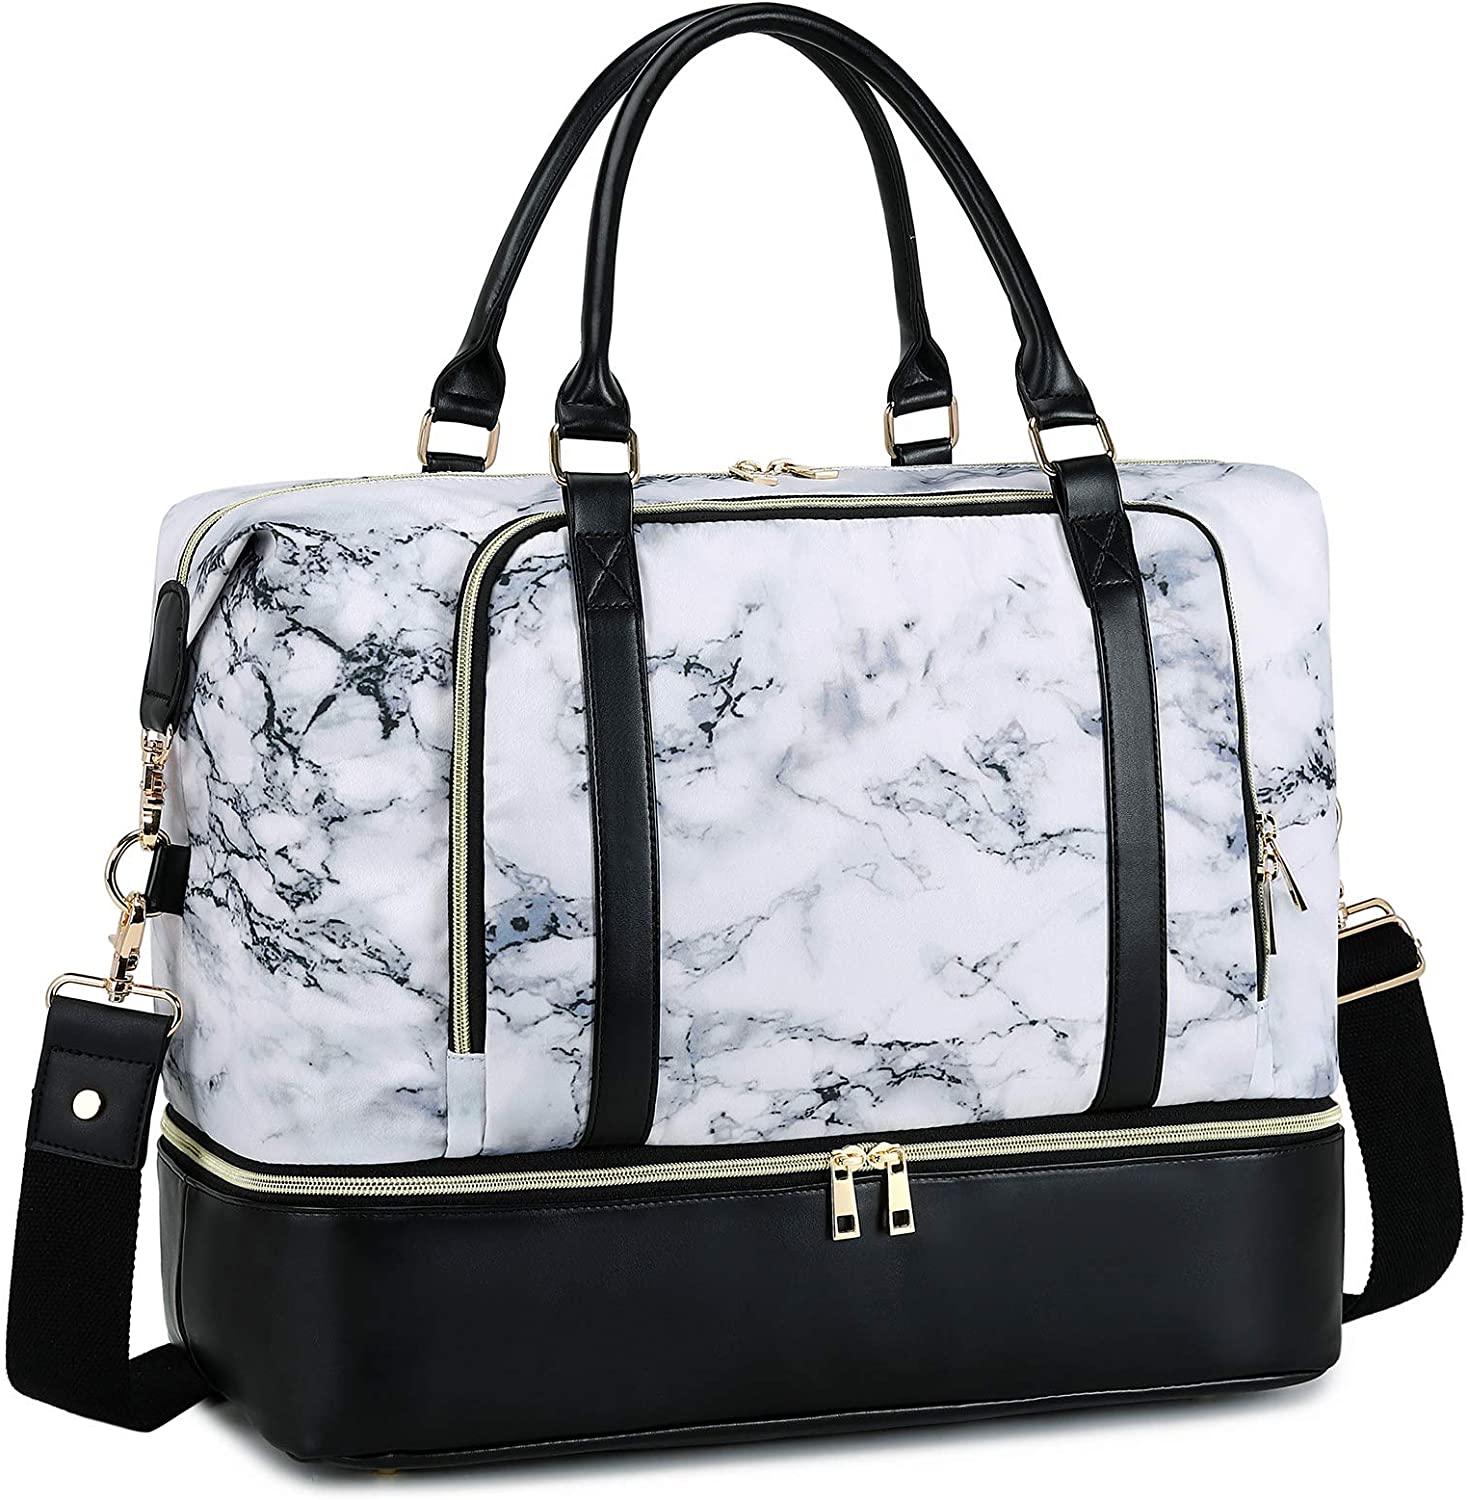 Hot Design Aangepaste Fabrieksprijs Overnachting Duffel Handbagage Tote Bag Dames Dames Reizen Weekendtas